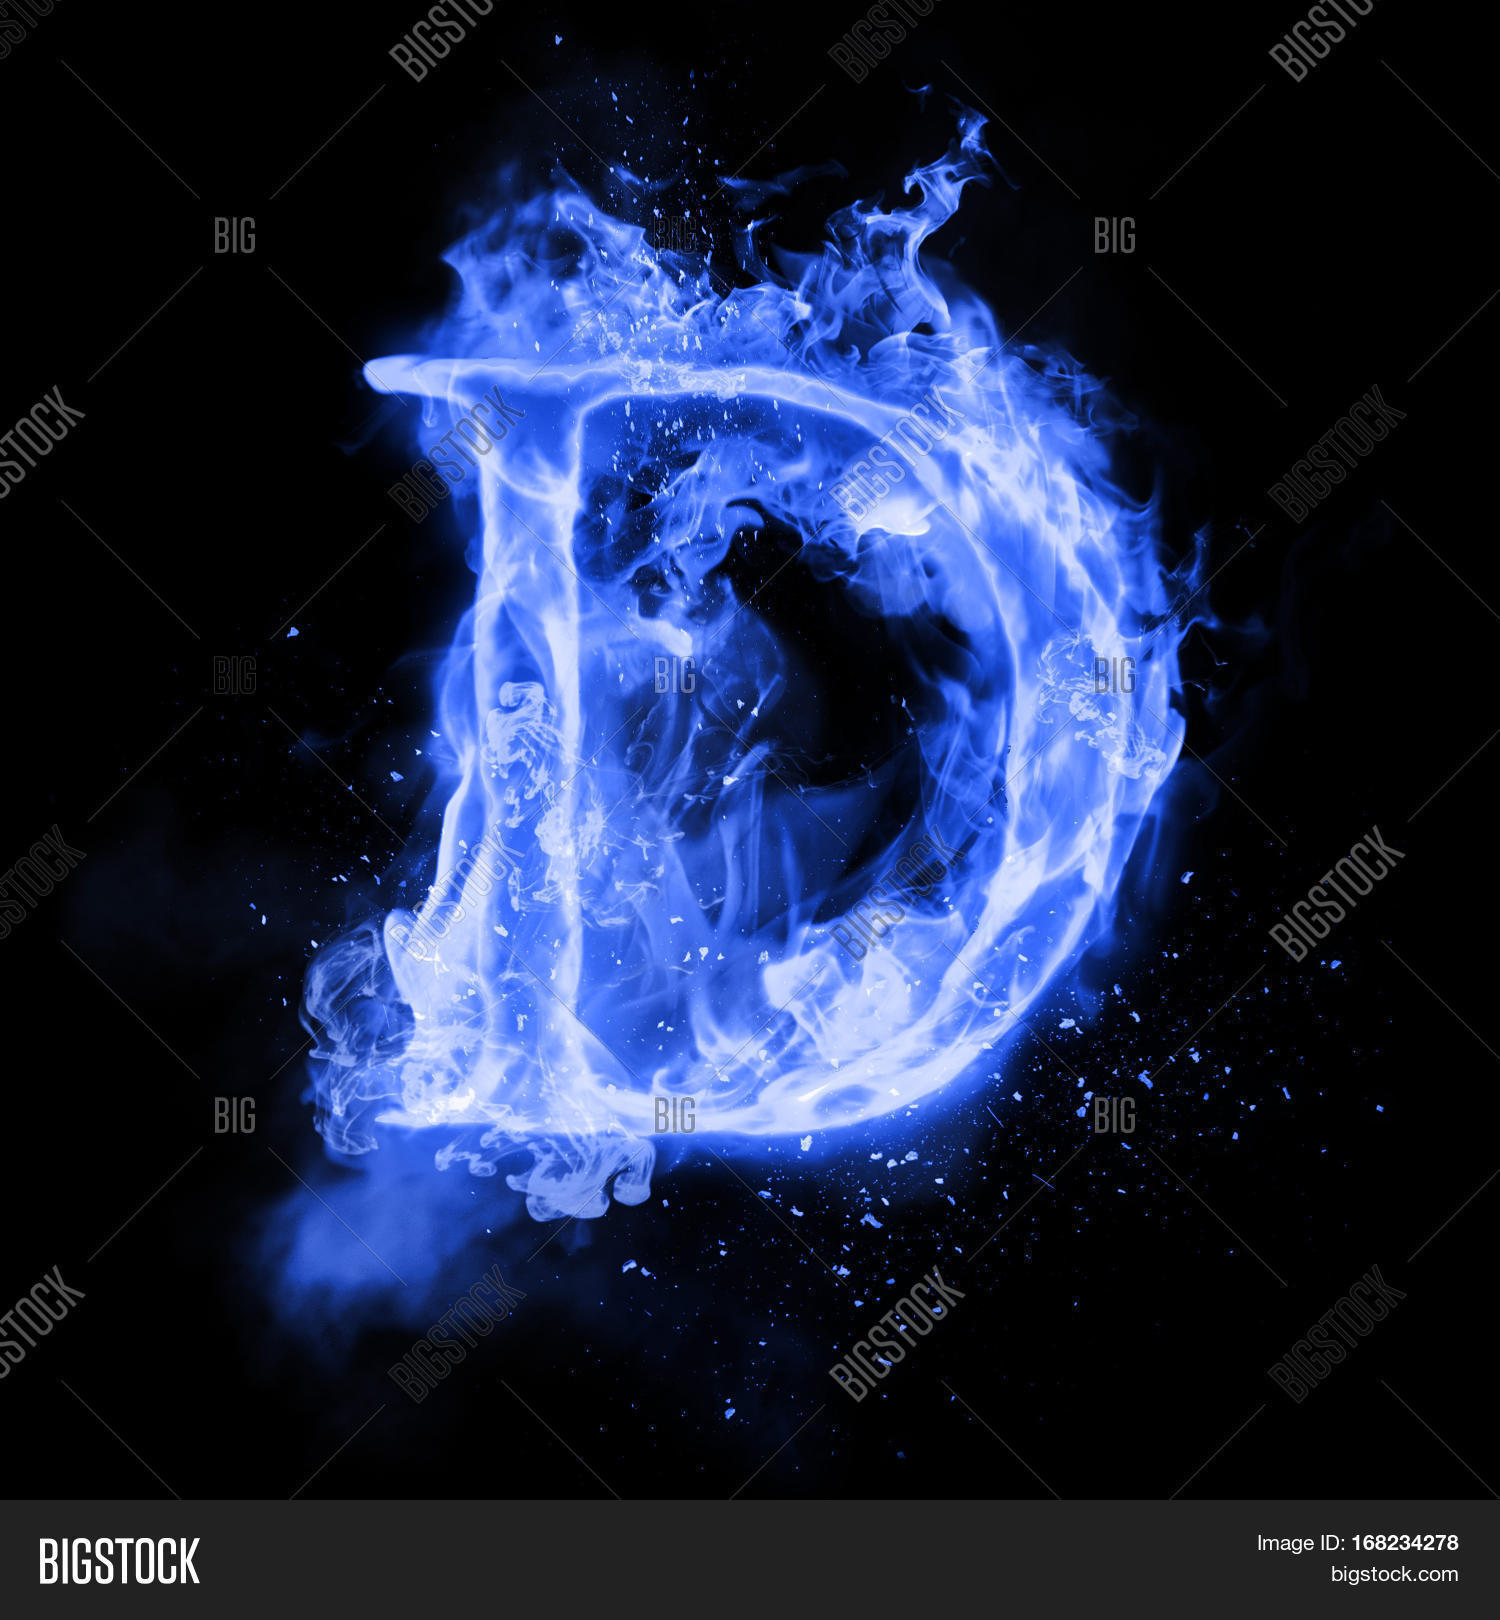 Fire Letter D of Burning Blue Flame Flaming Burn Font Image ...